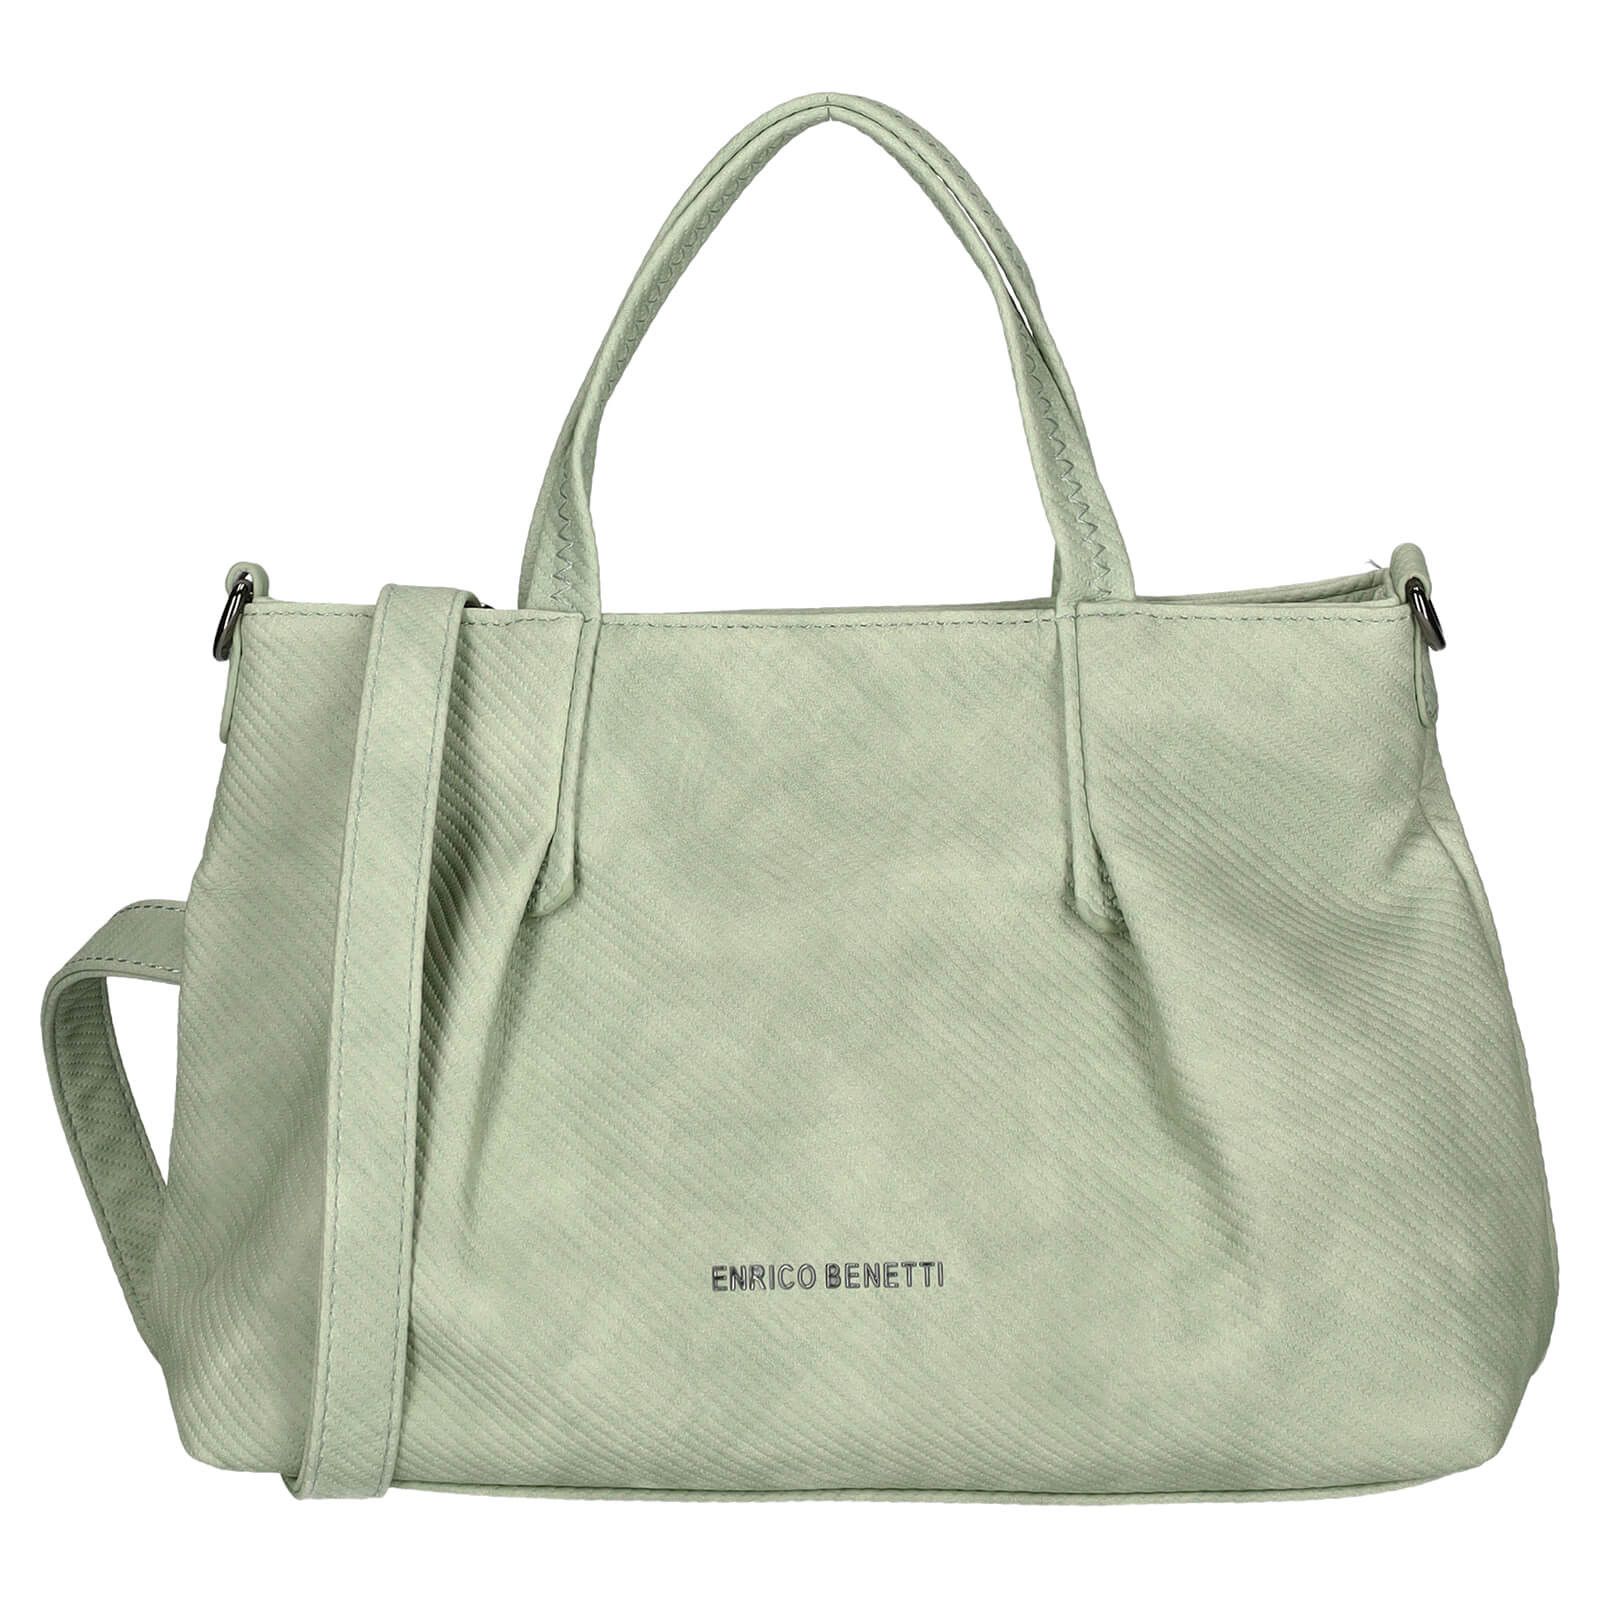 Menšia dámska kabelka Enrico Benetti Dorés - svetlo zelená